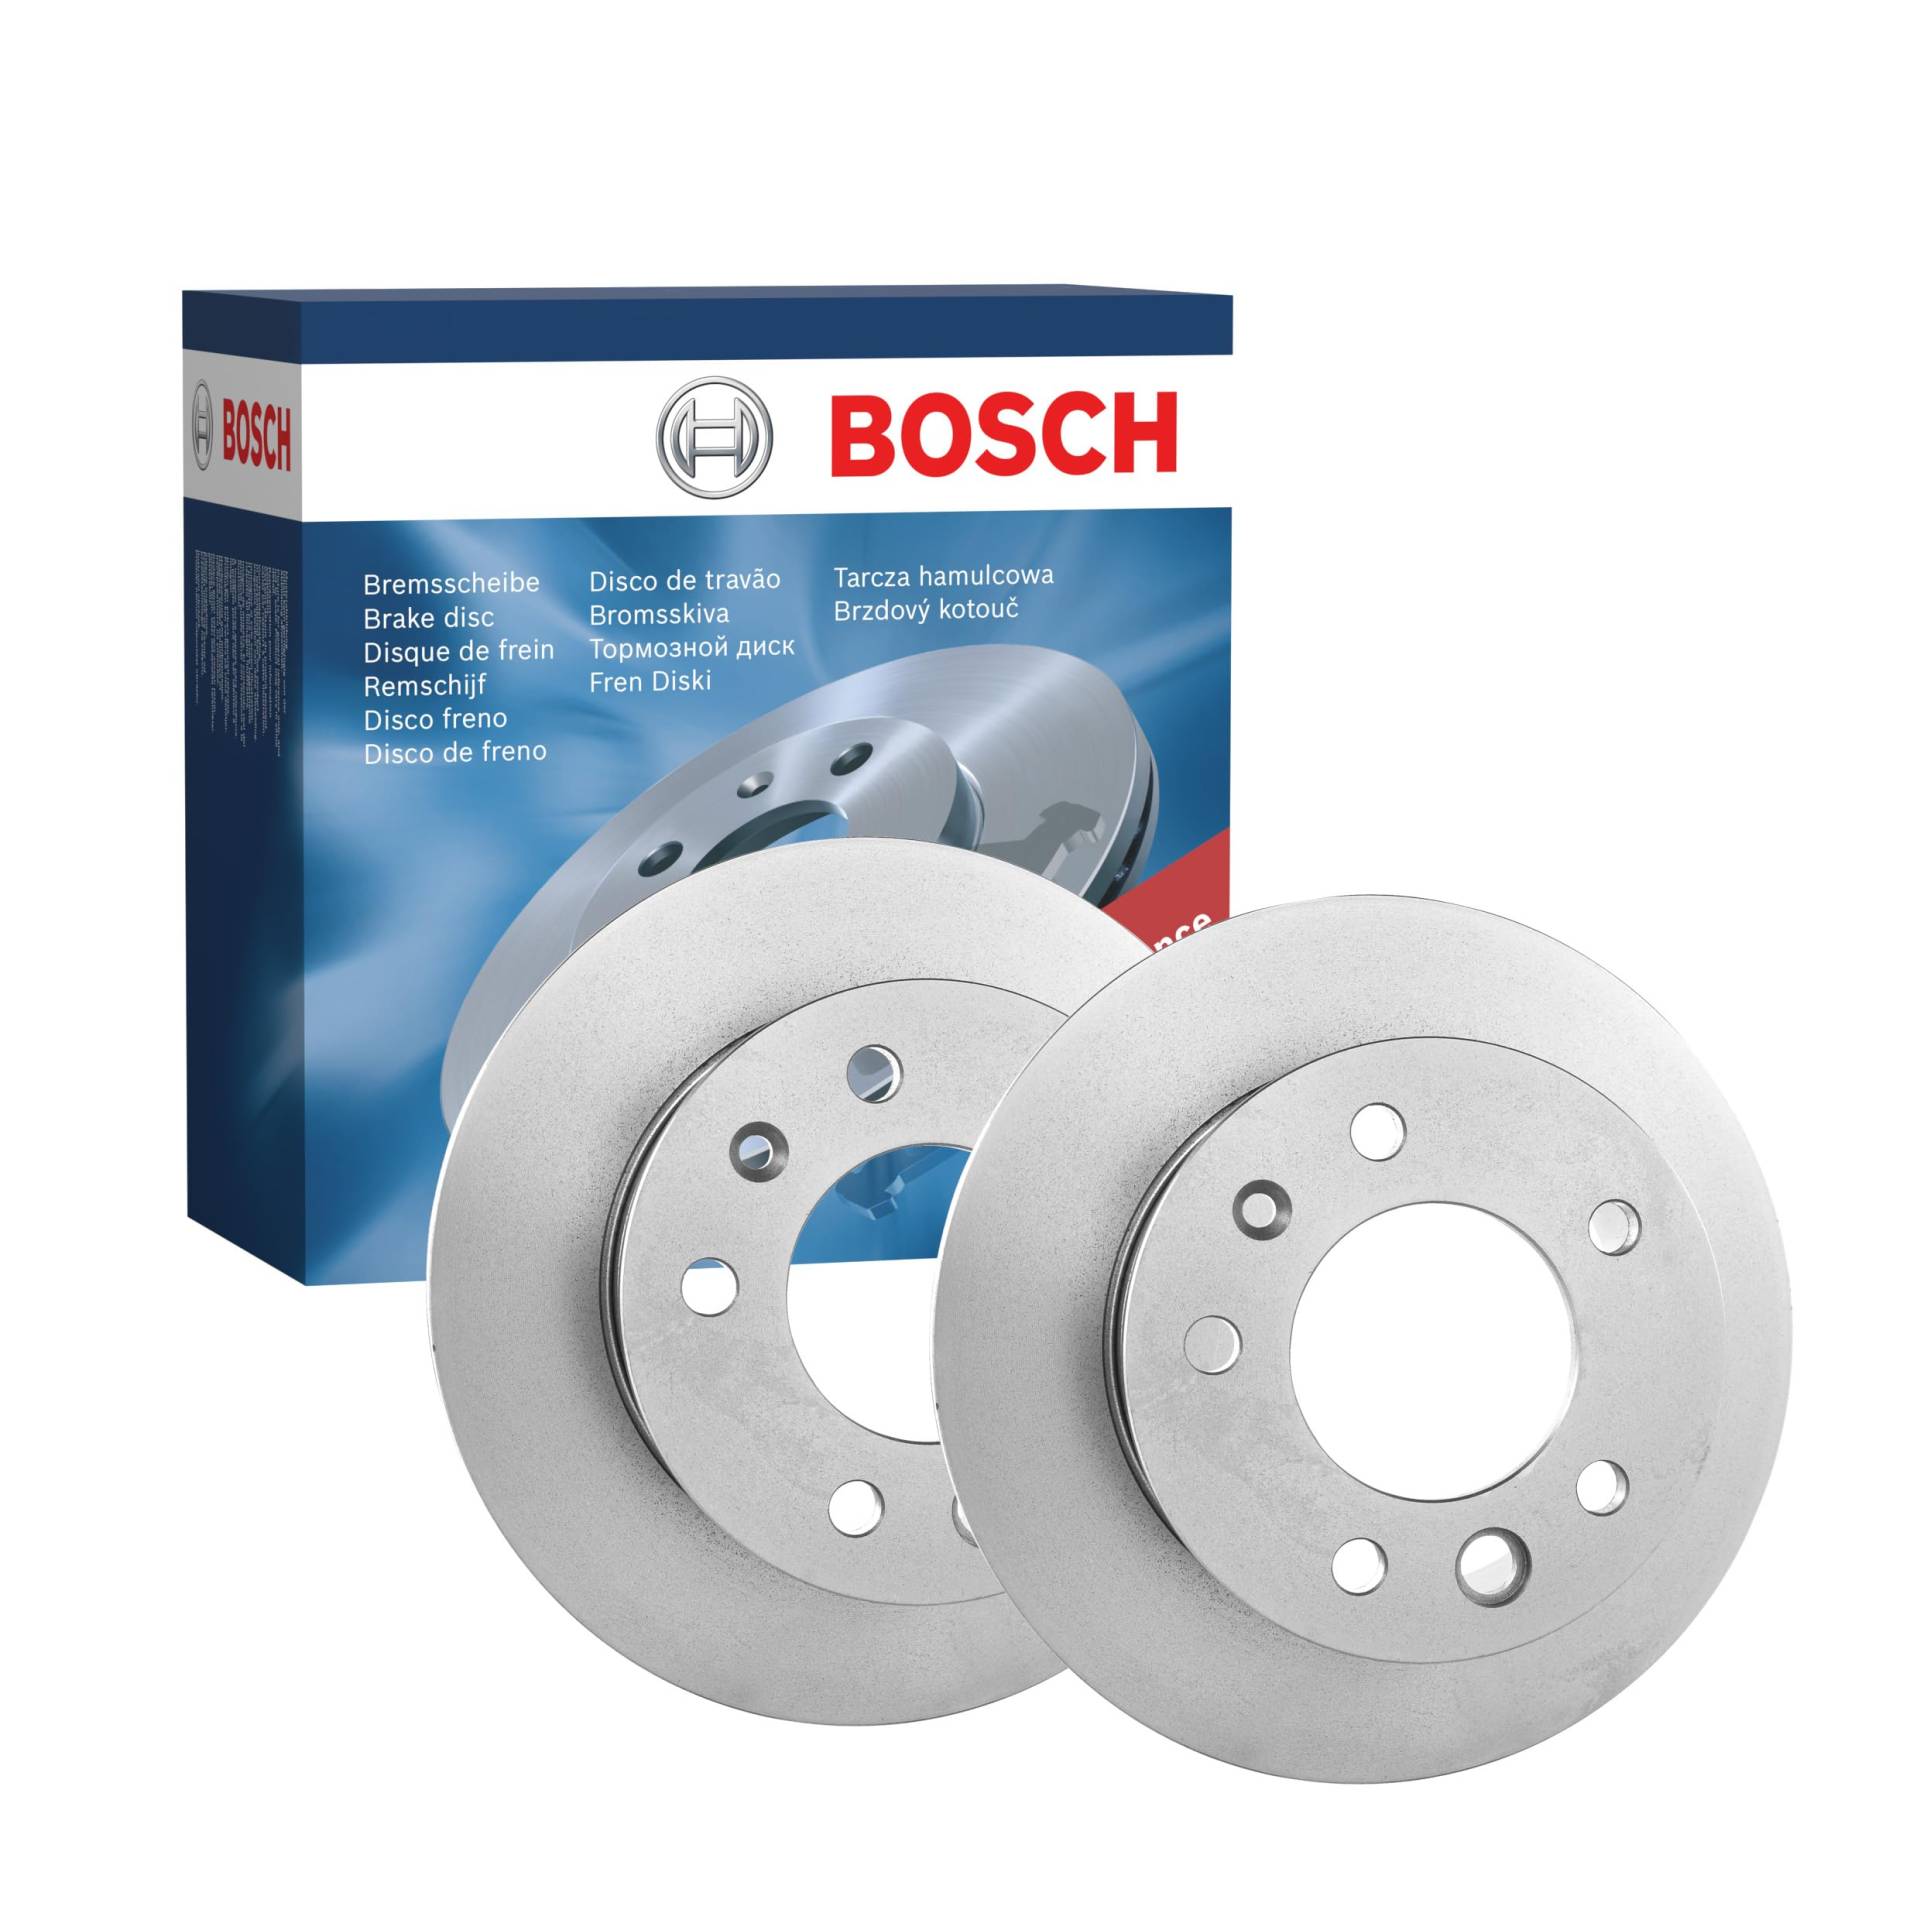 Bosch BD749 Bremsscheiben - Vorderachse - ECE-R90 Zertifizierung - zwei Bremsscheiben pro Set von Bosch Automotive